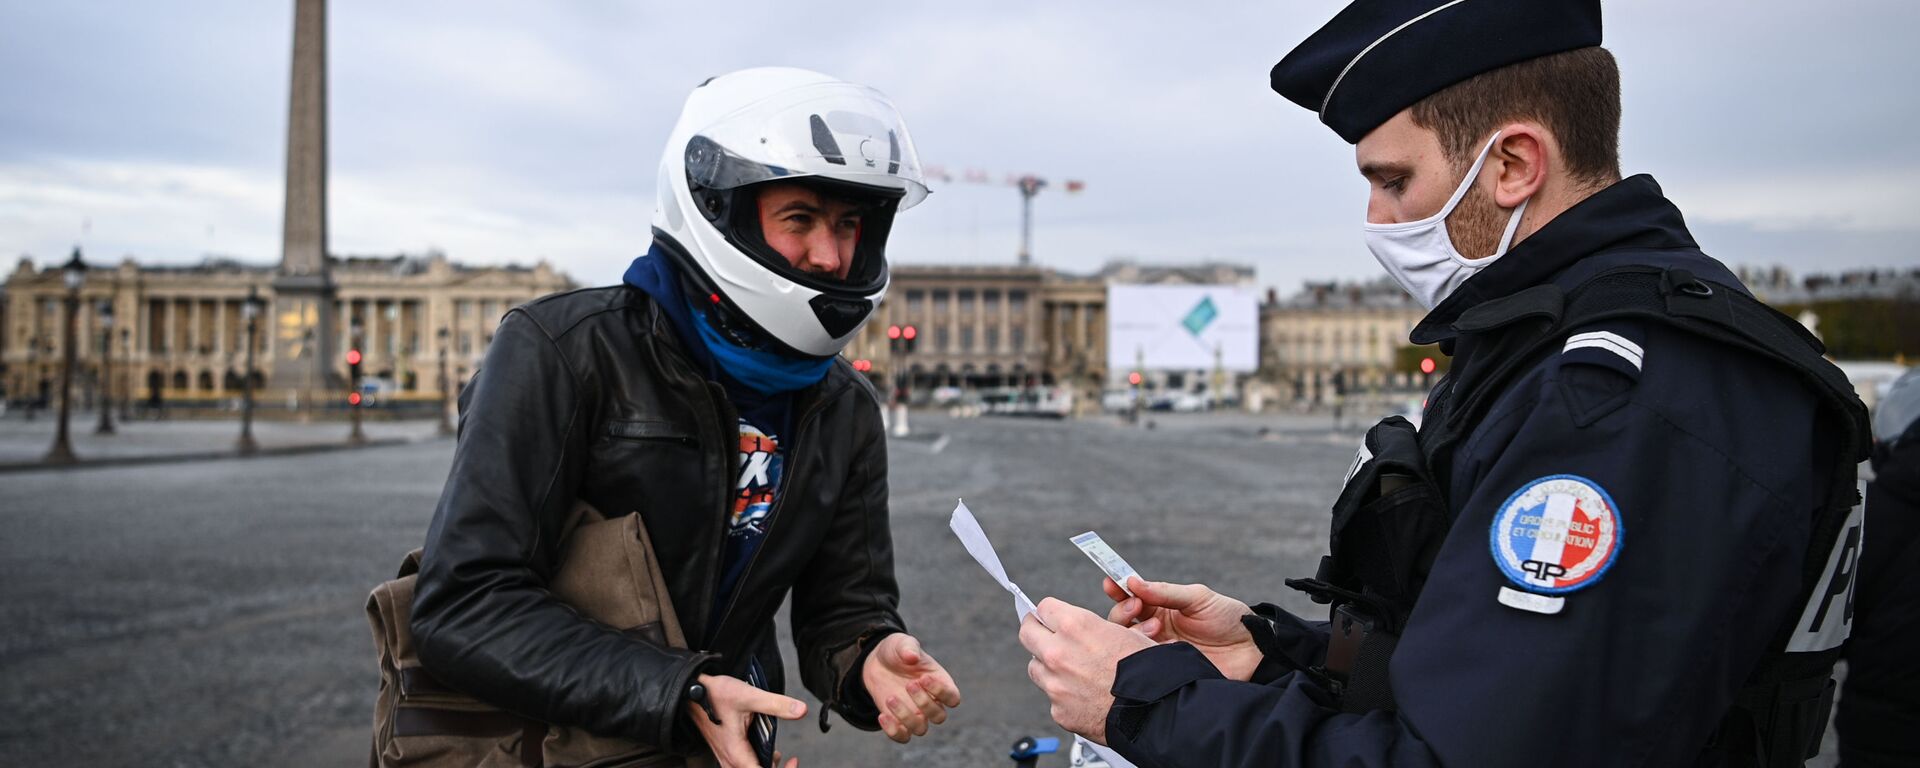 Французский полицейский проверяет документы мотоциклиста на площади Согласия в Париже, Франция - Sputnik Узбекистан, 1920, 01.04.2021